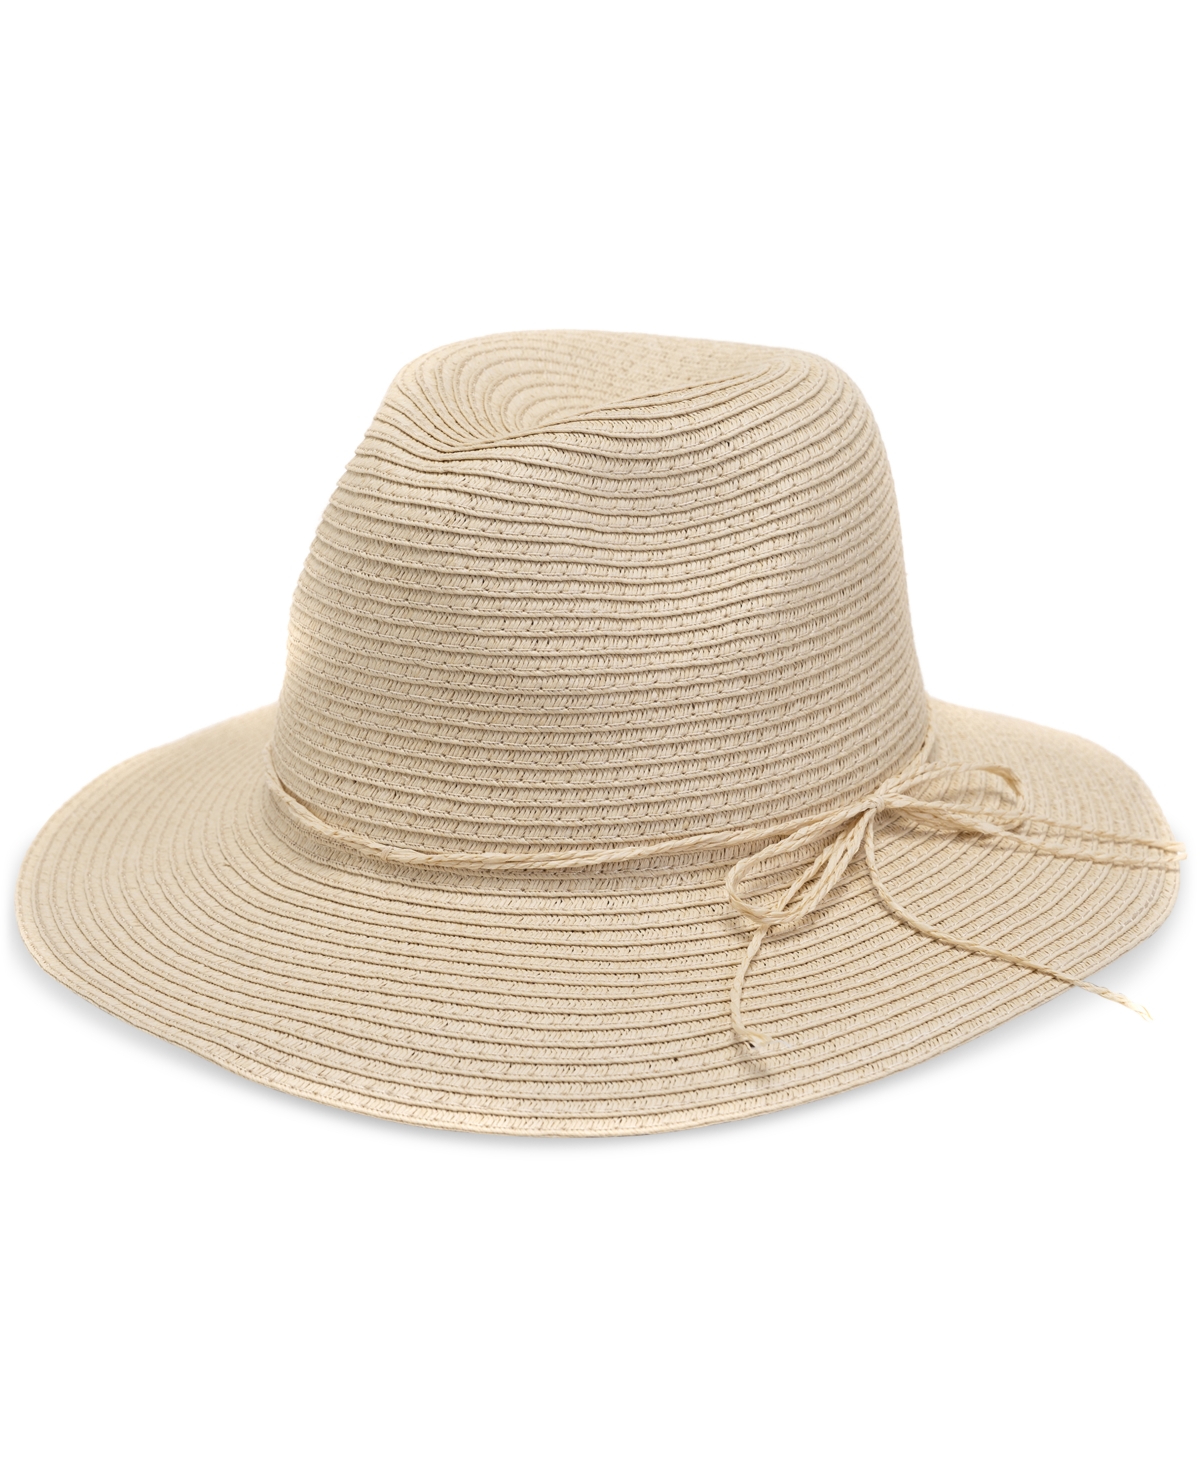 Basic Straw Panama Hat - White